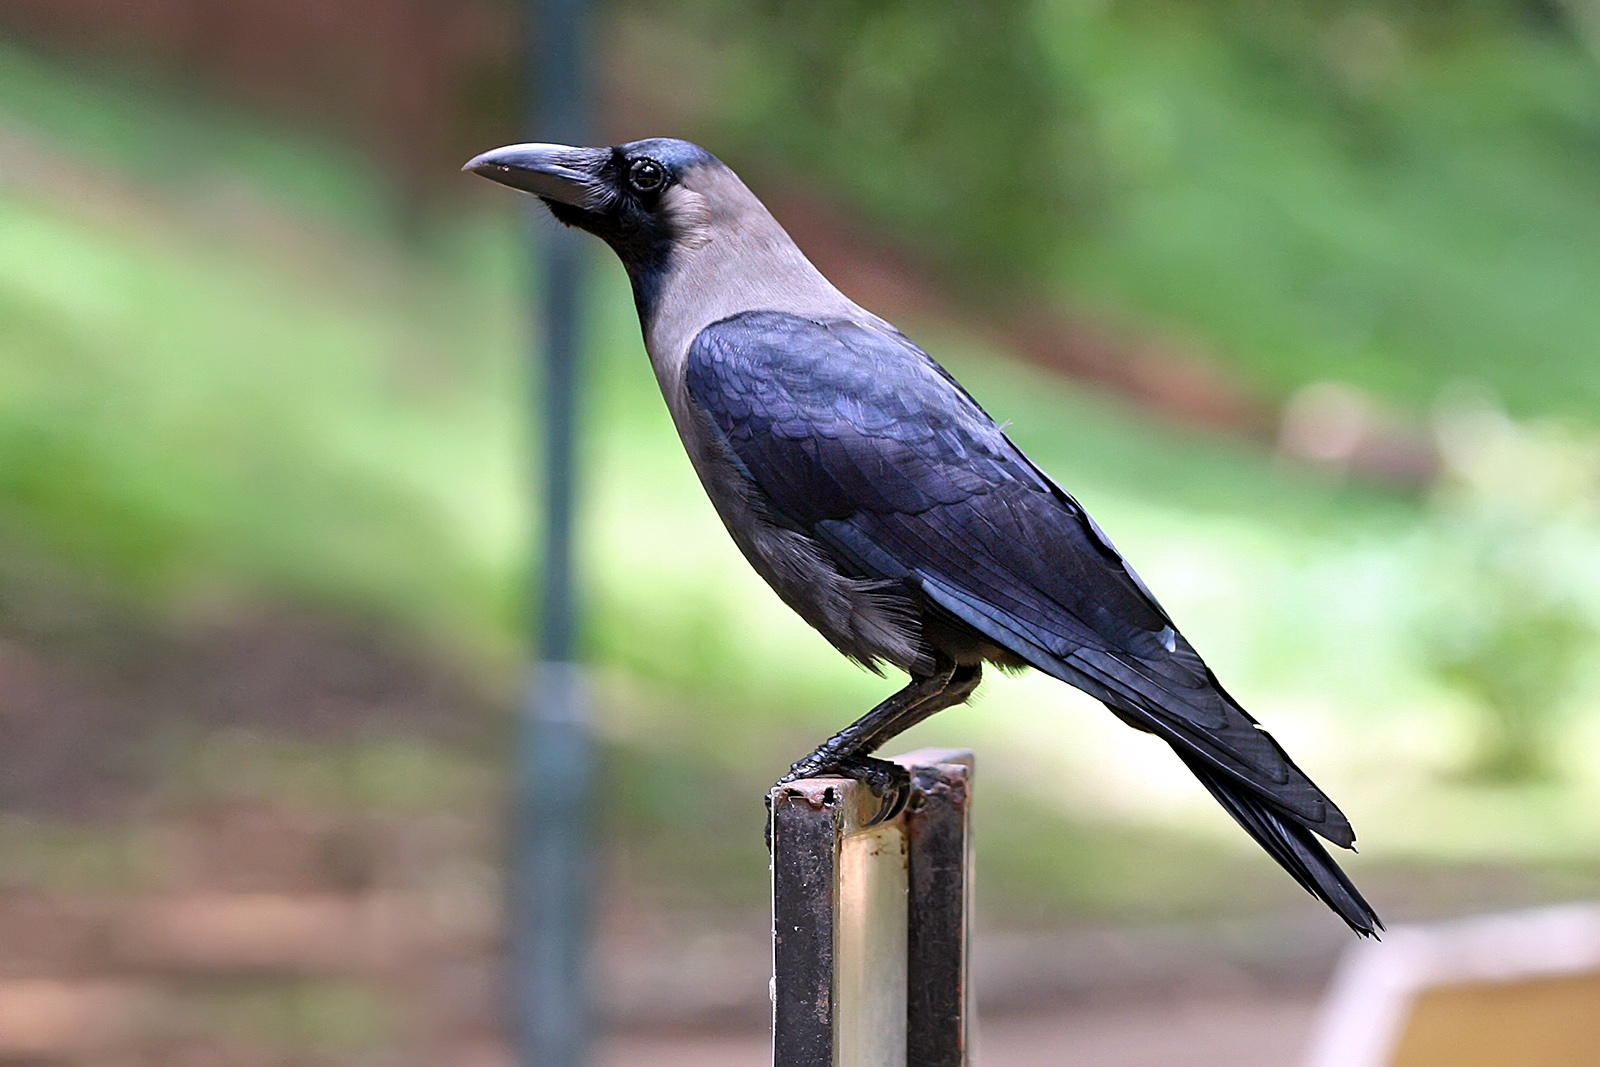 Corvus Bird Pictures